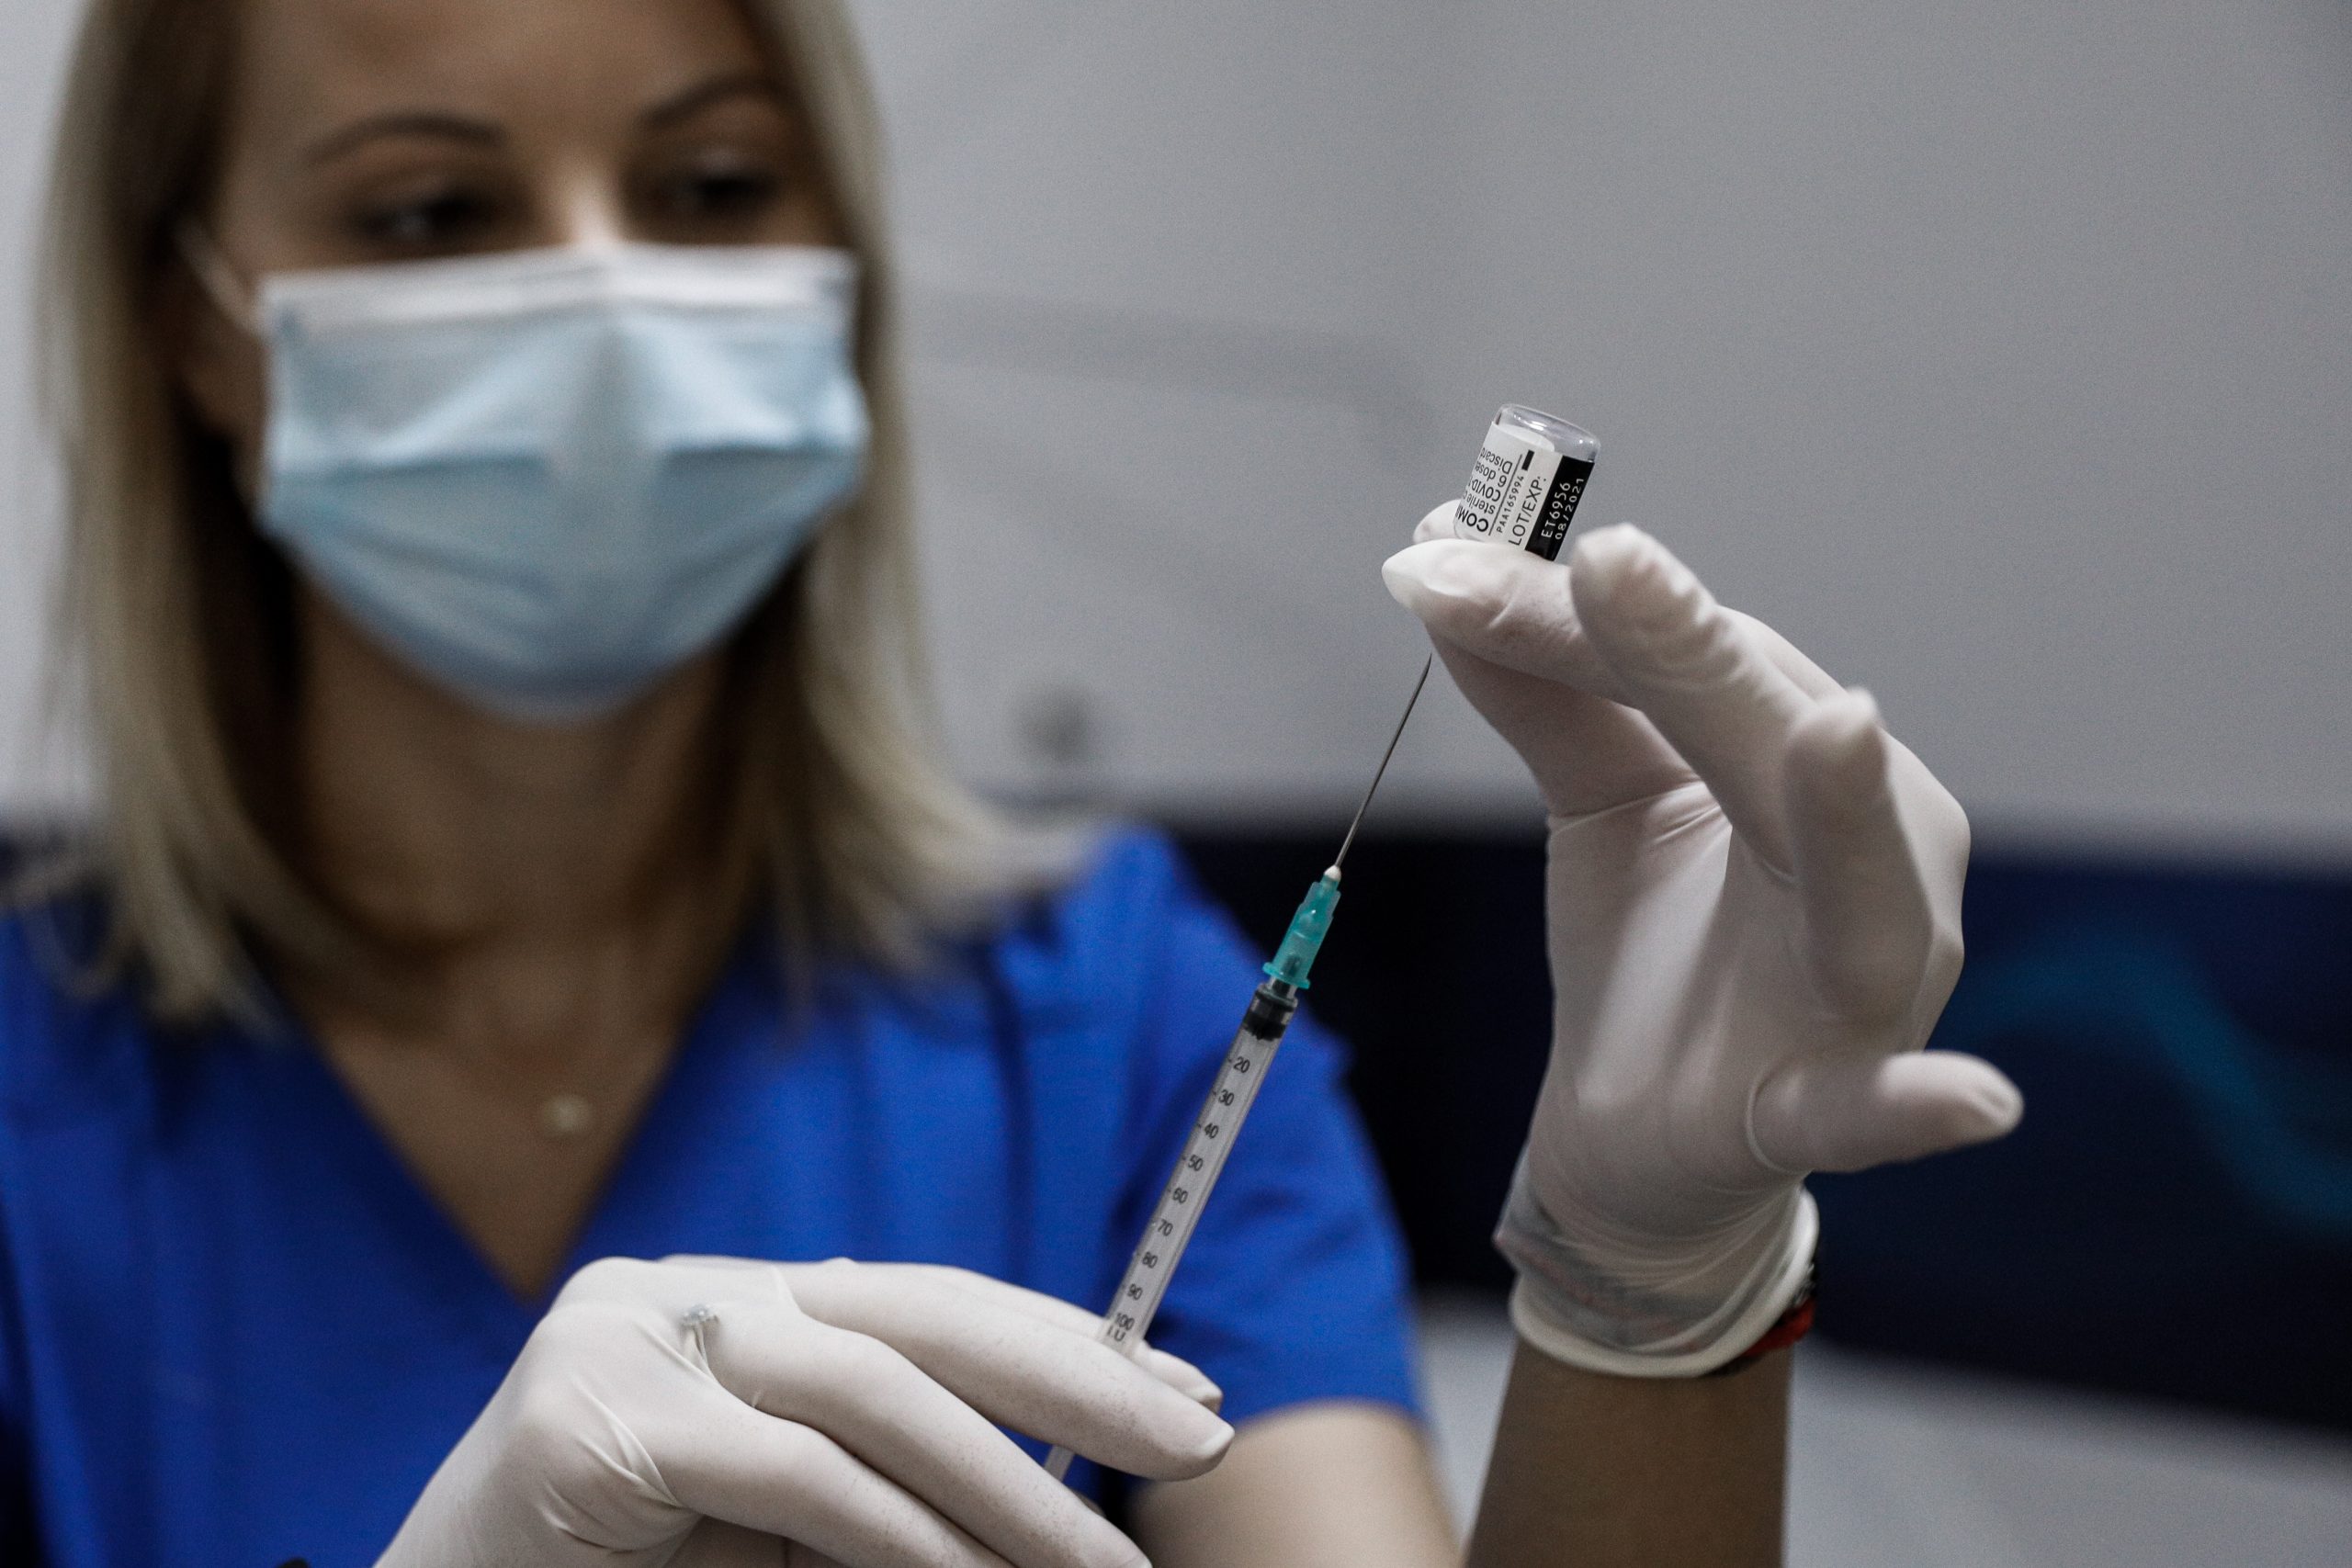 Κορονοϊός: Στο τραπέζι πιο σκληρά μέτρα για τους ανεμβολίαστους – Σενάριο να μη μπαίνουν στα ΜΜΜ